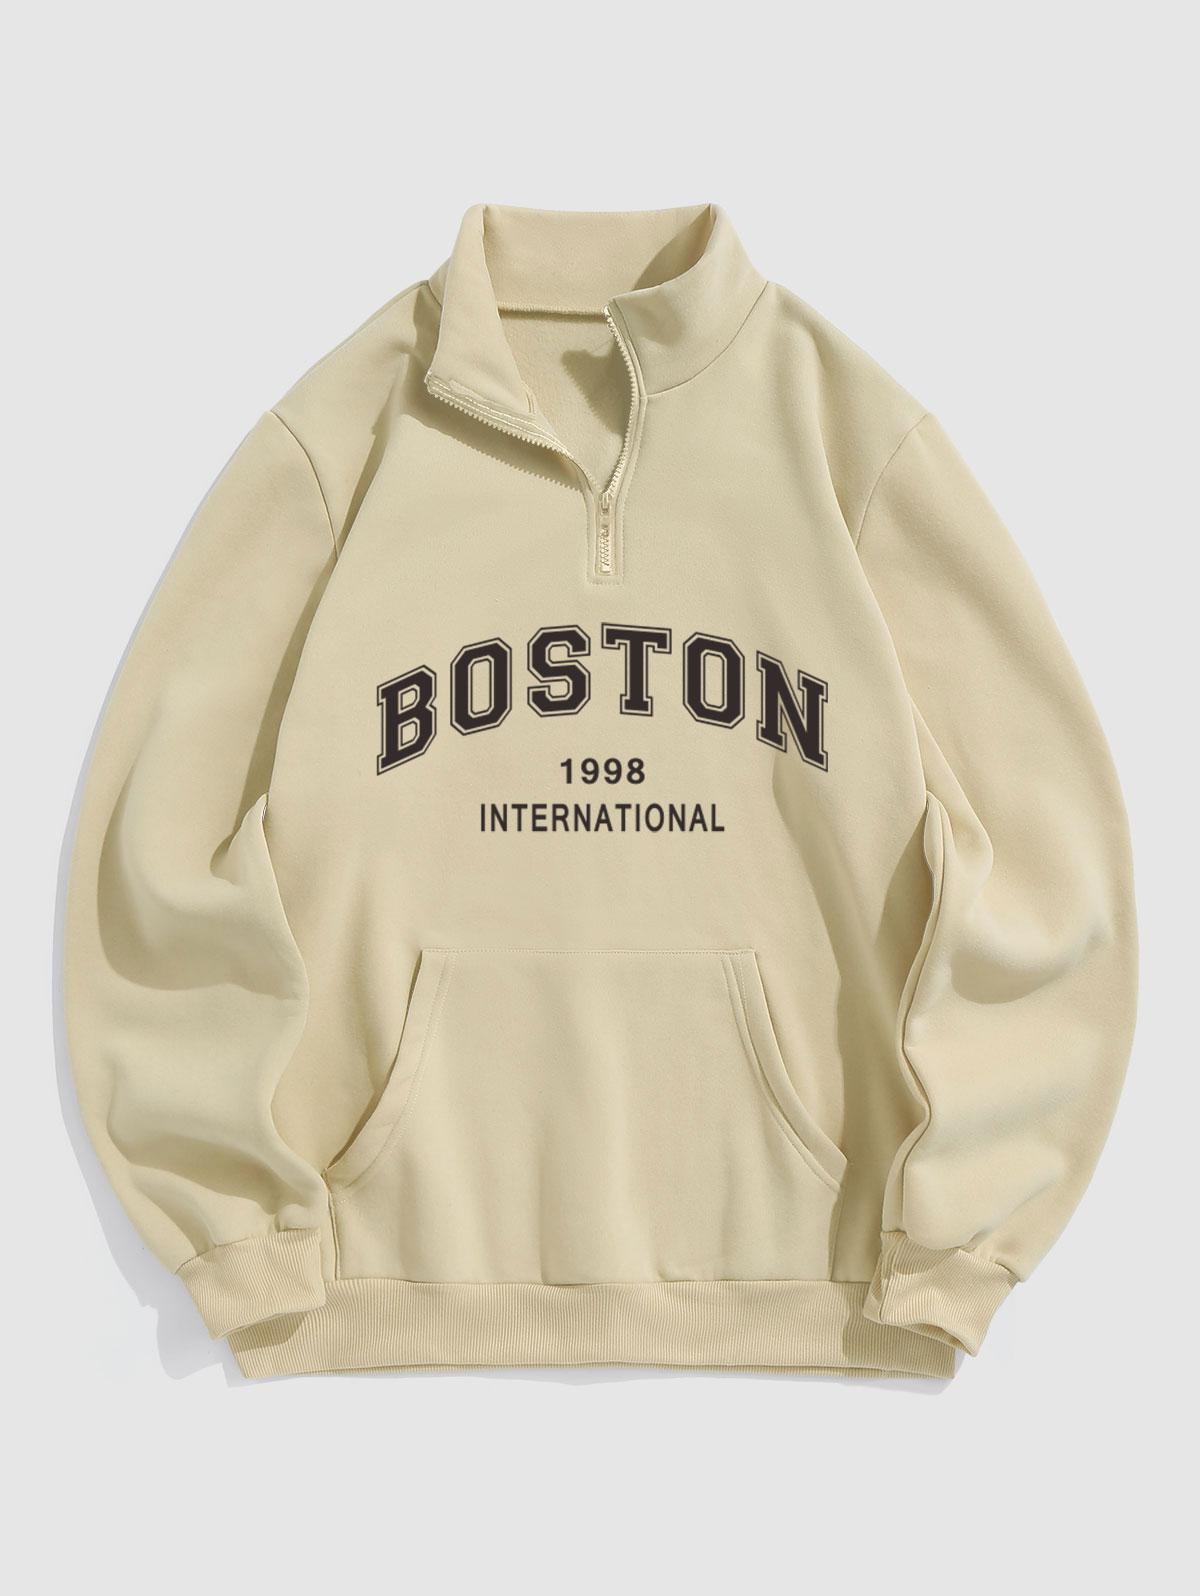 ZAFUL Men's BOSTON Letter Pattern Quarter Zip Design Fleece-lined Sweatshirt Xl Light coffee